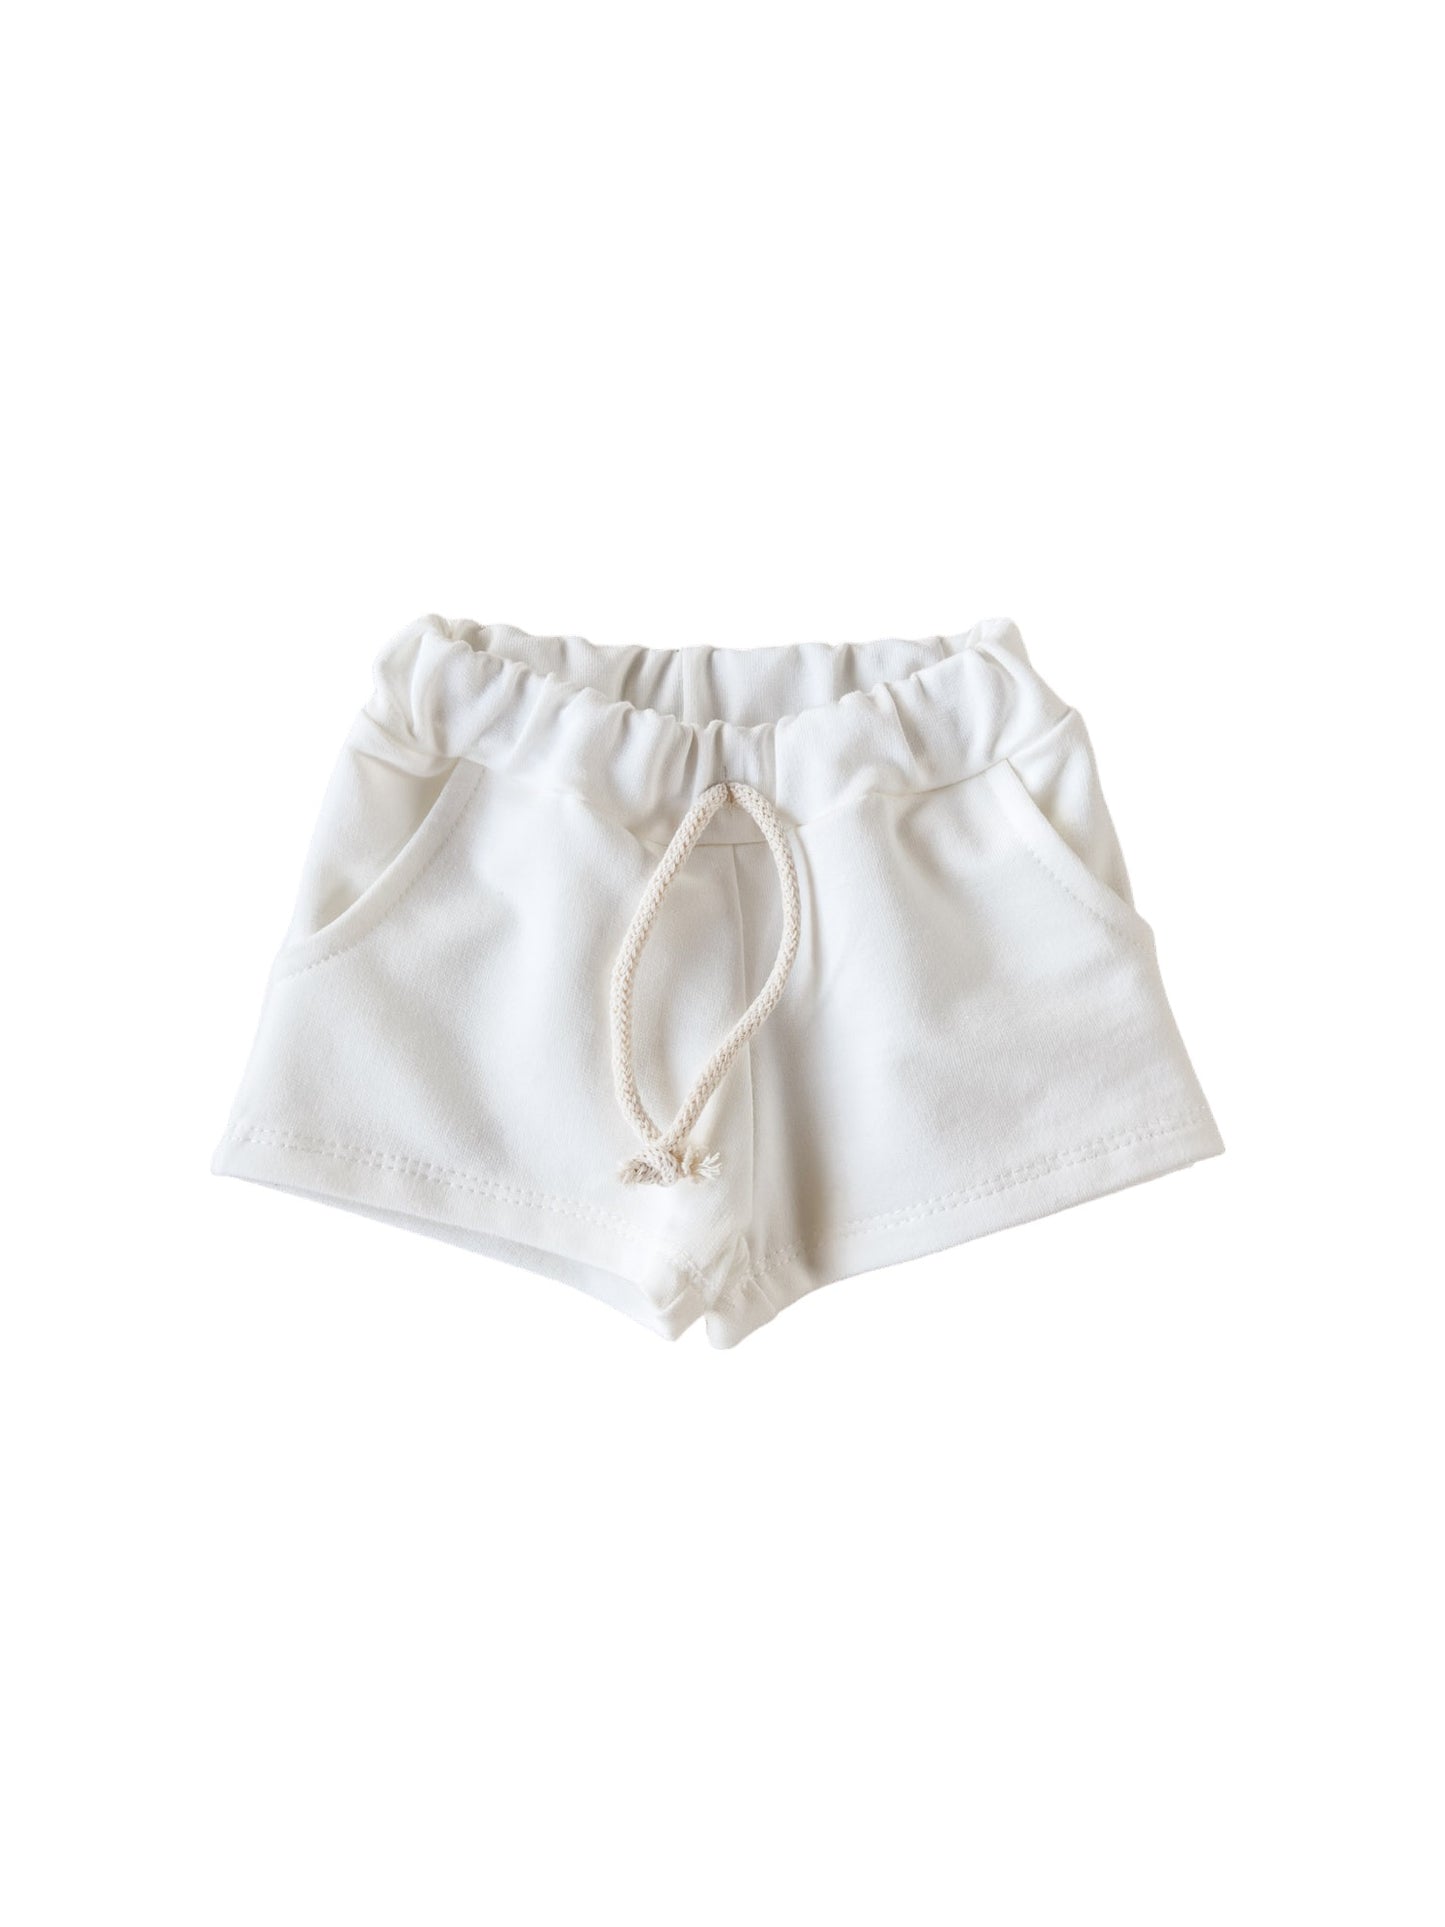 Cotton shorts / ivory